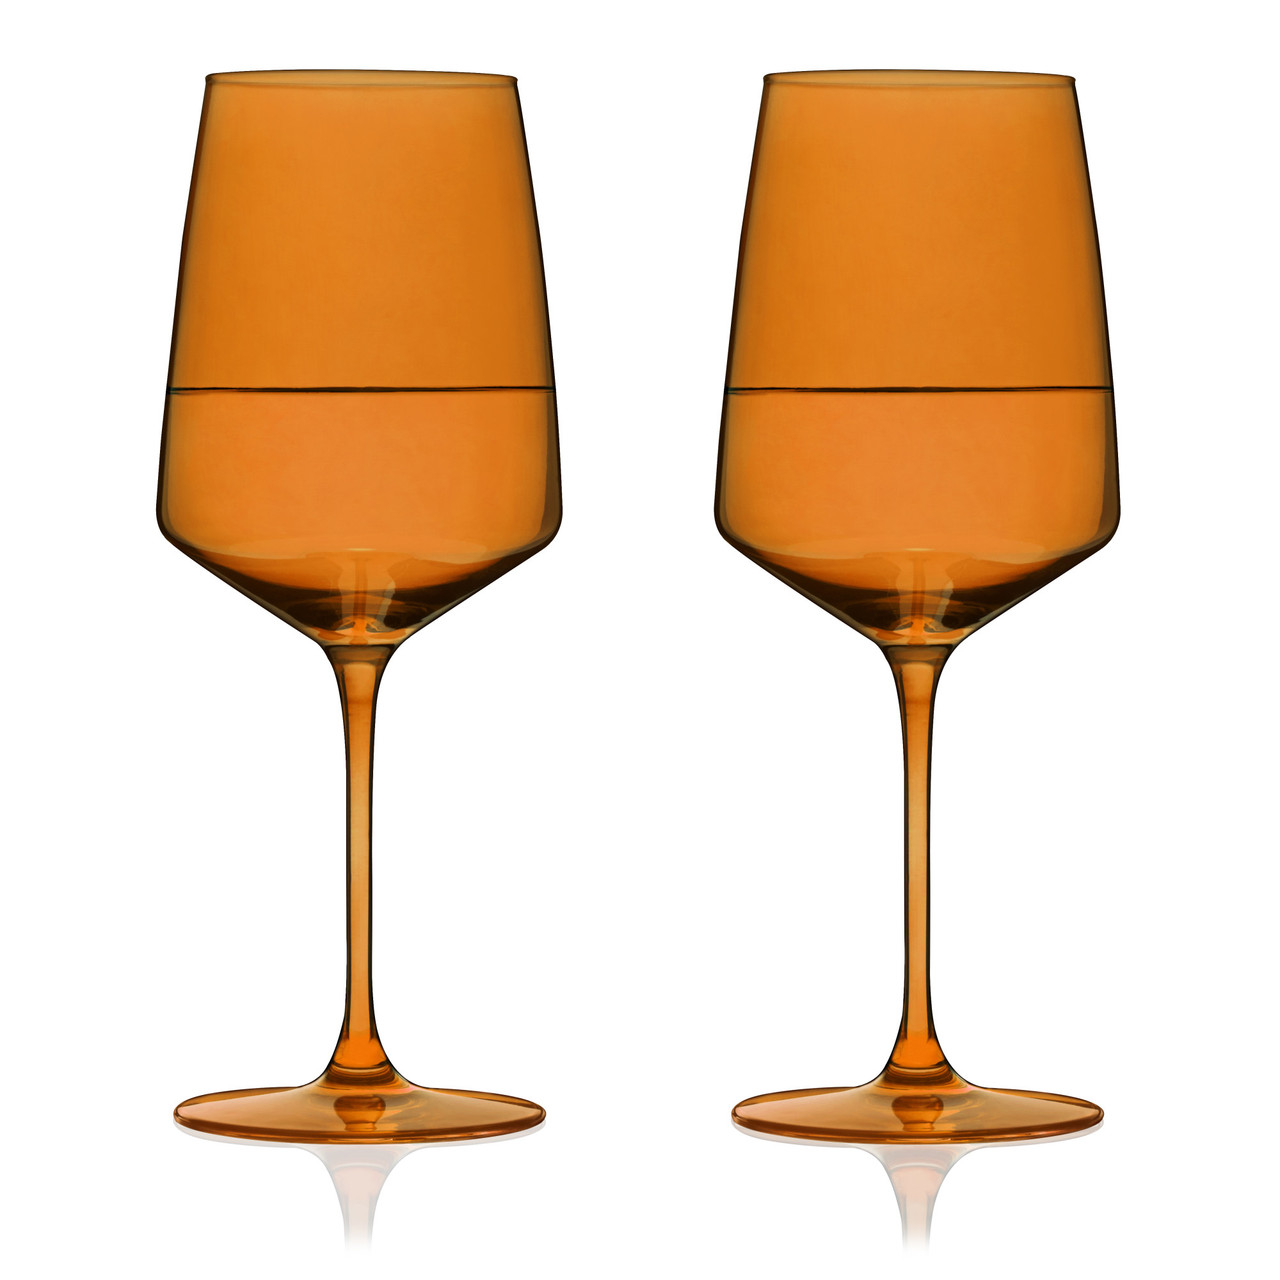 Reserve Nouveau Crystal Wine Glasses in Amber By Viski (set